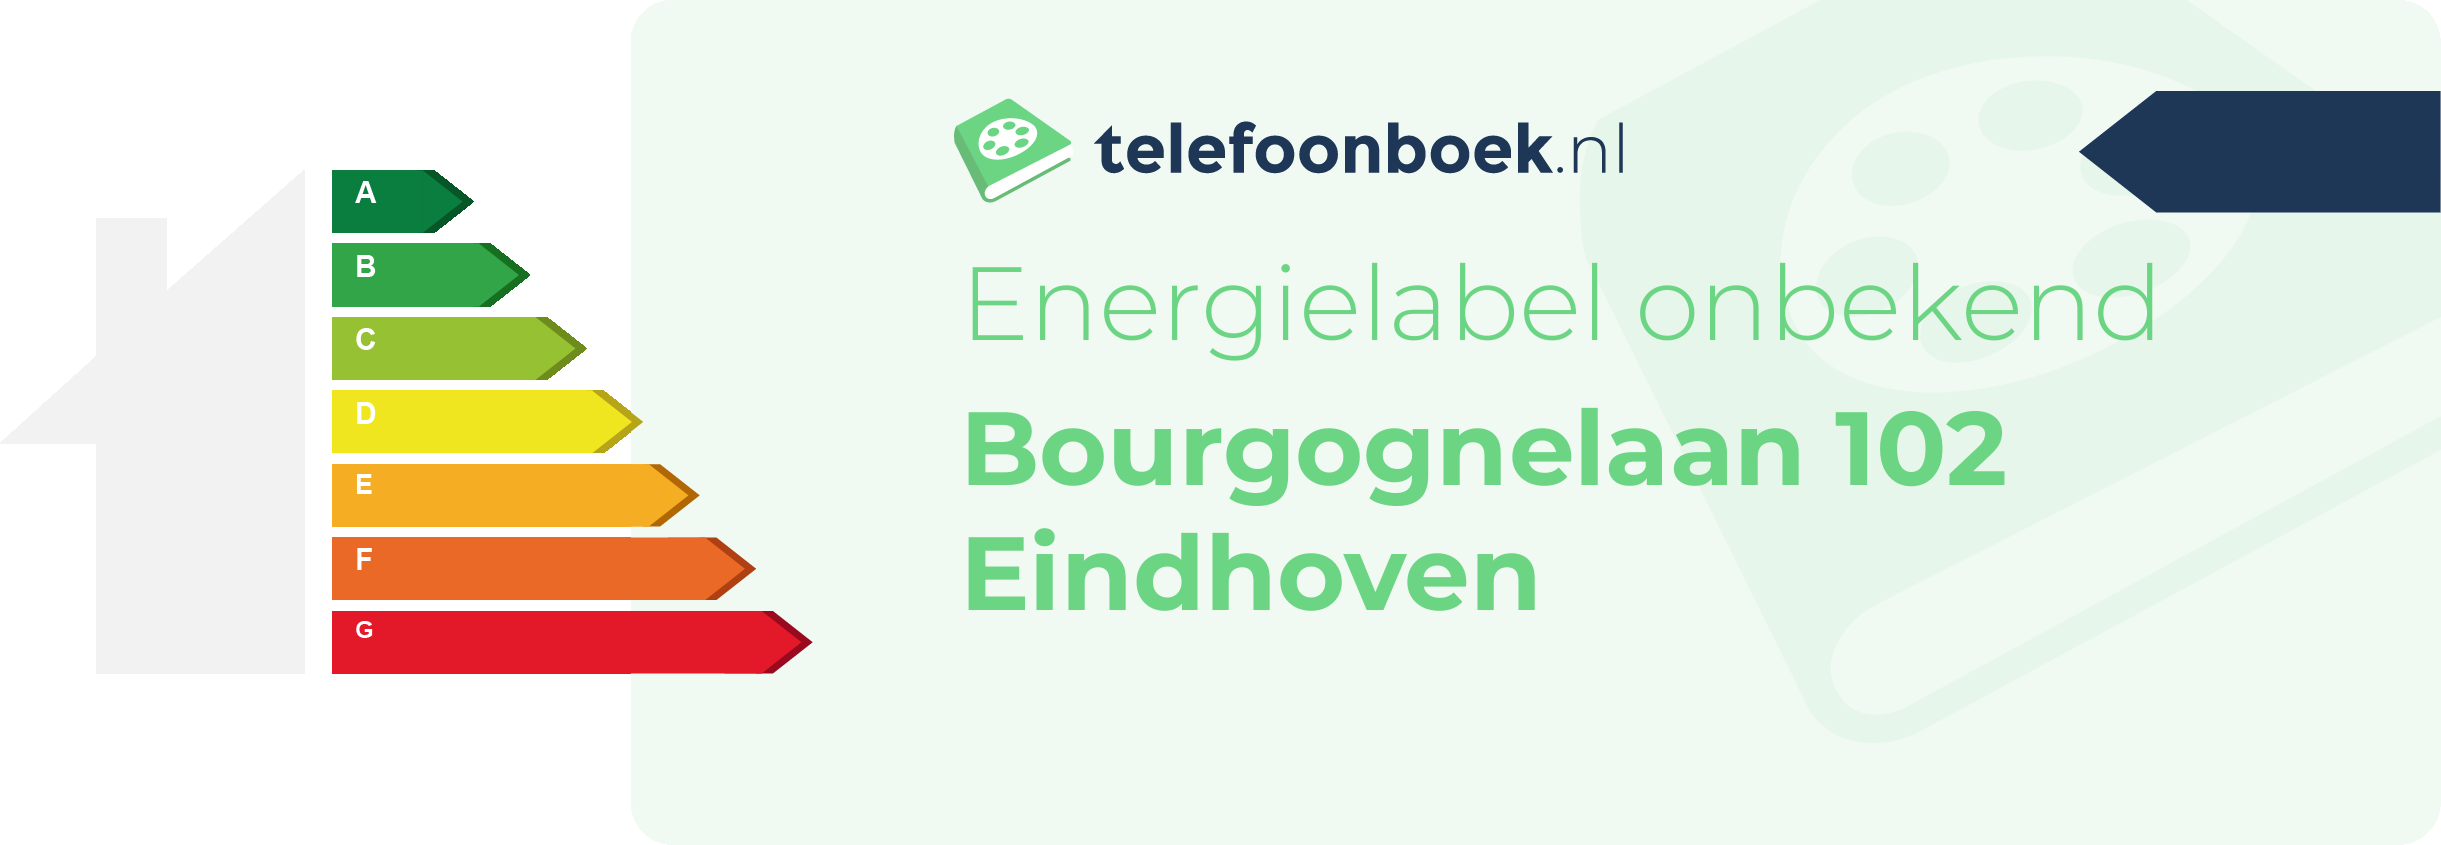 Energielabel Bourgognelaan 102 Eindhoven